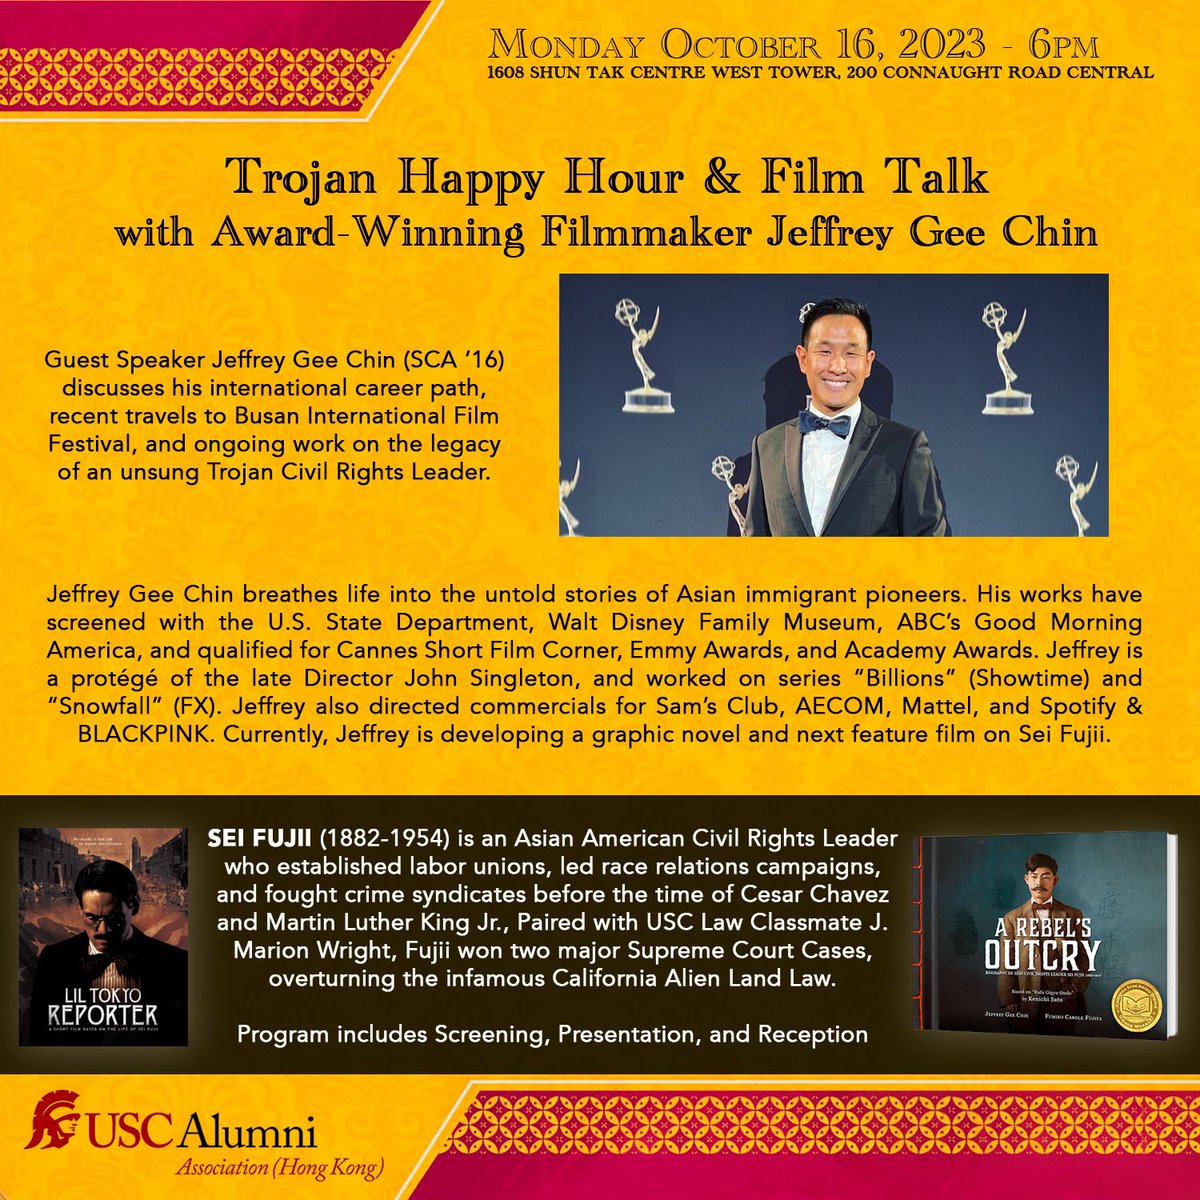 #HongKong Trojans Talk with Award Winning Filmmaker Jeffrey Gee Chin
Monday, Oct.16, 6–9pm 
Unit 1608, #ShuntakCentre West Tower, Sheung Wan 🔗docs.google.com/forms/d/e/1FAI… #LilTokyoReporter #SeiFujii